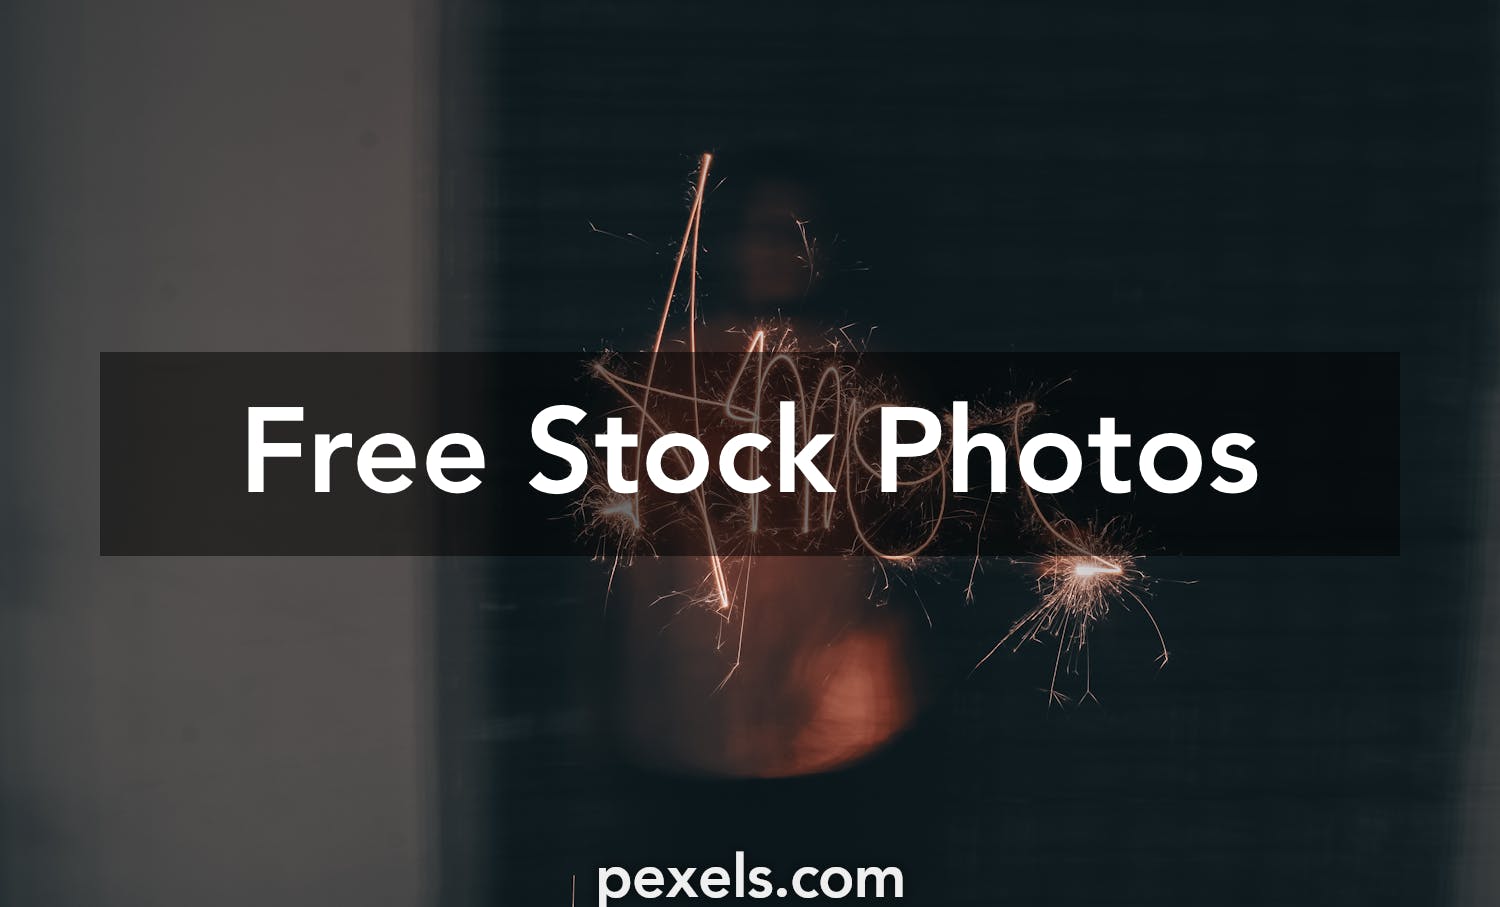 Beautiful Amorous Photos Pexels · Free Stock Photos